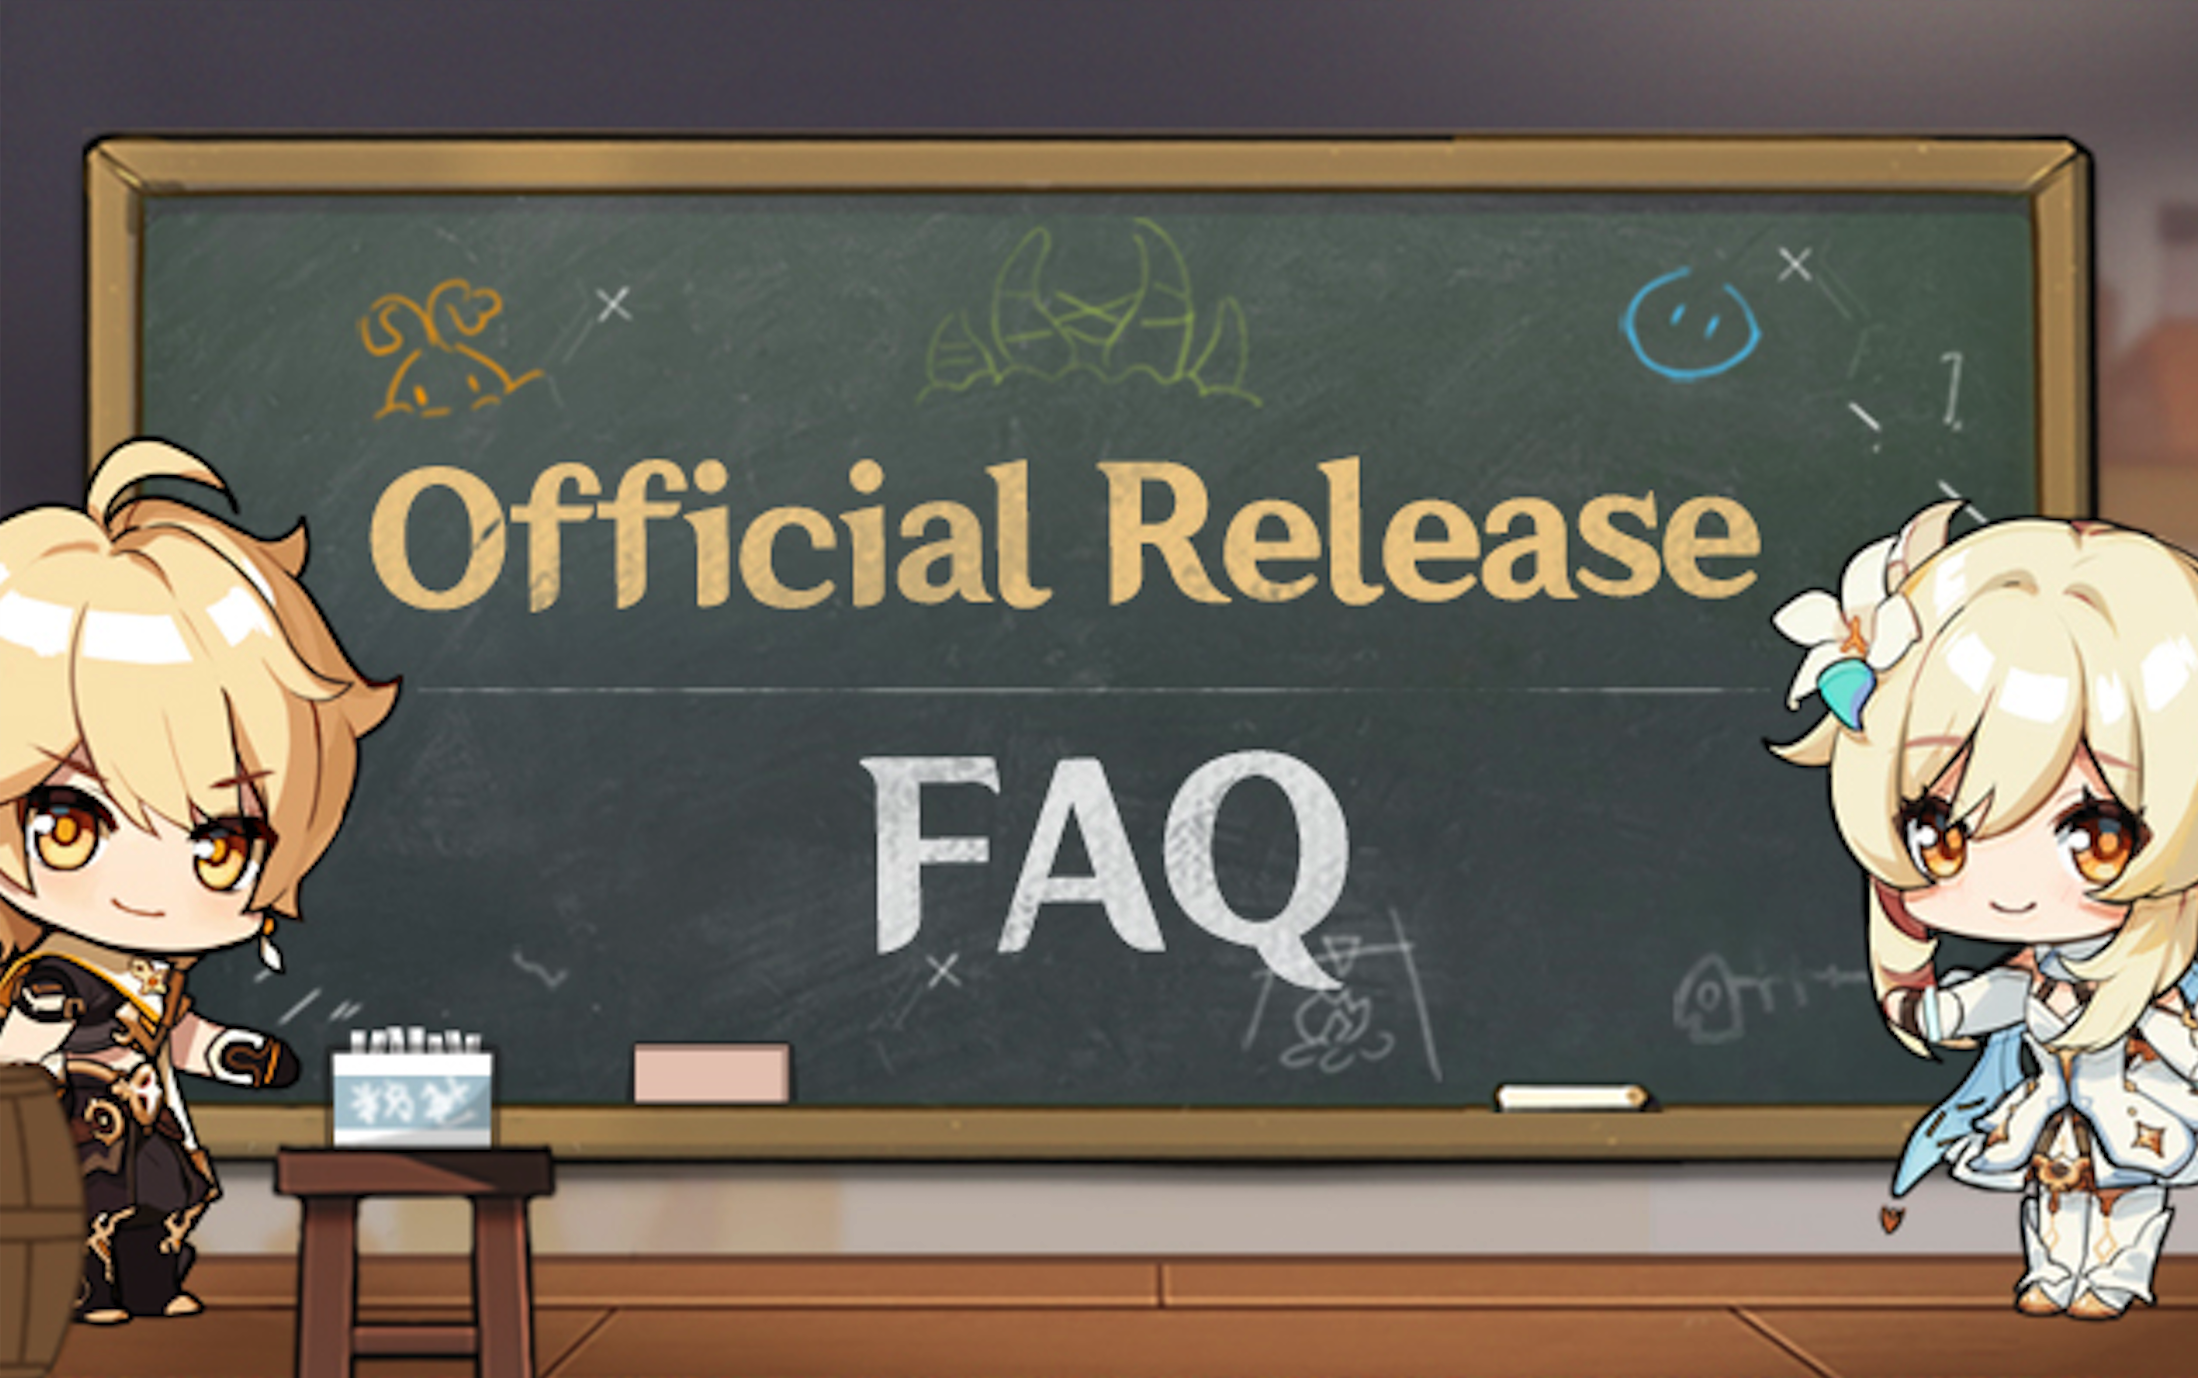 Official Release FAQ